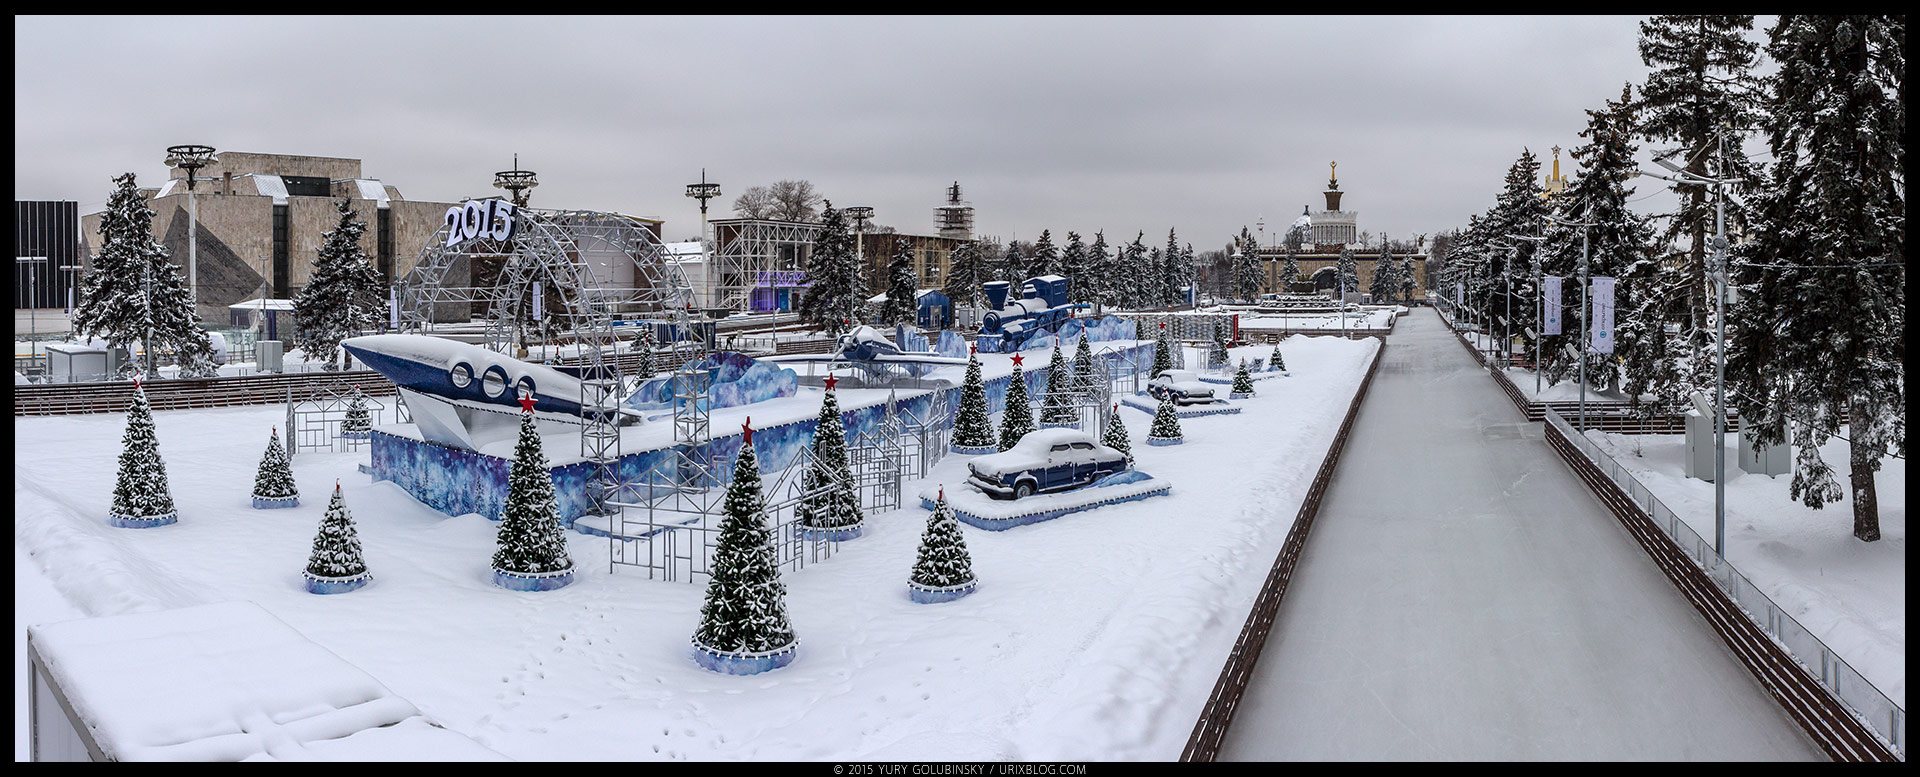 Ледяной каток, ВДХН, парк, лёд, снег, зима, советский стиль, ракета, архитектура, Москва, Россия, январь, панорама, 2015